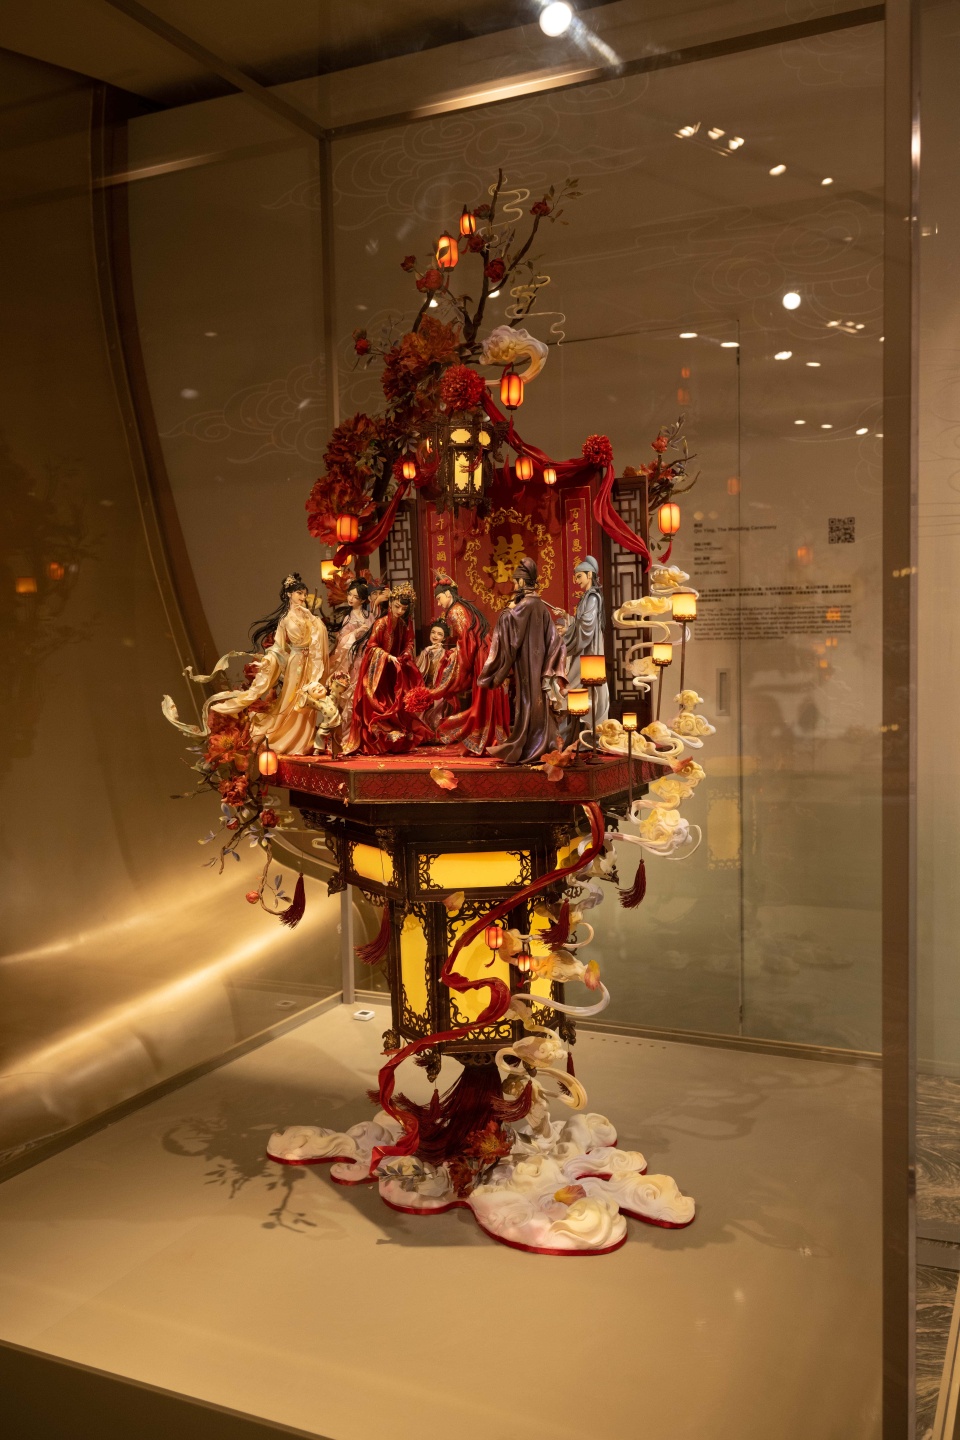 「中國糖王」周毅翻糖雕塑展澳門舉行-用蛋糕藝術展現中華文化